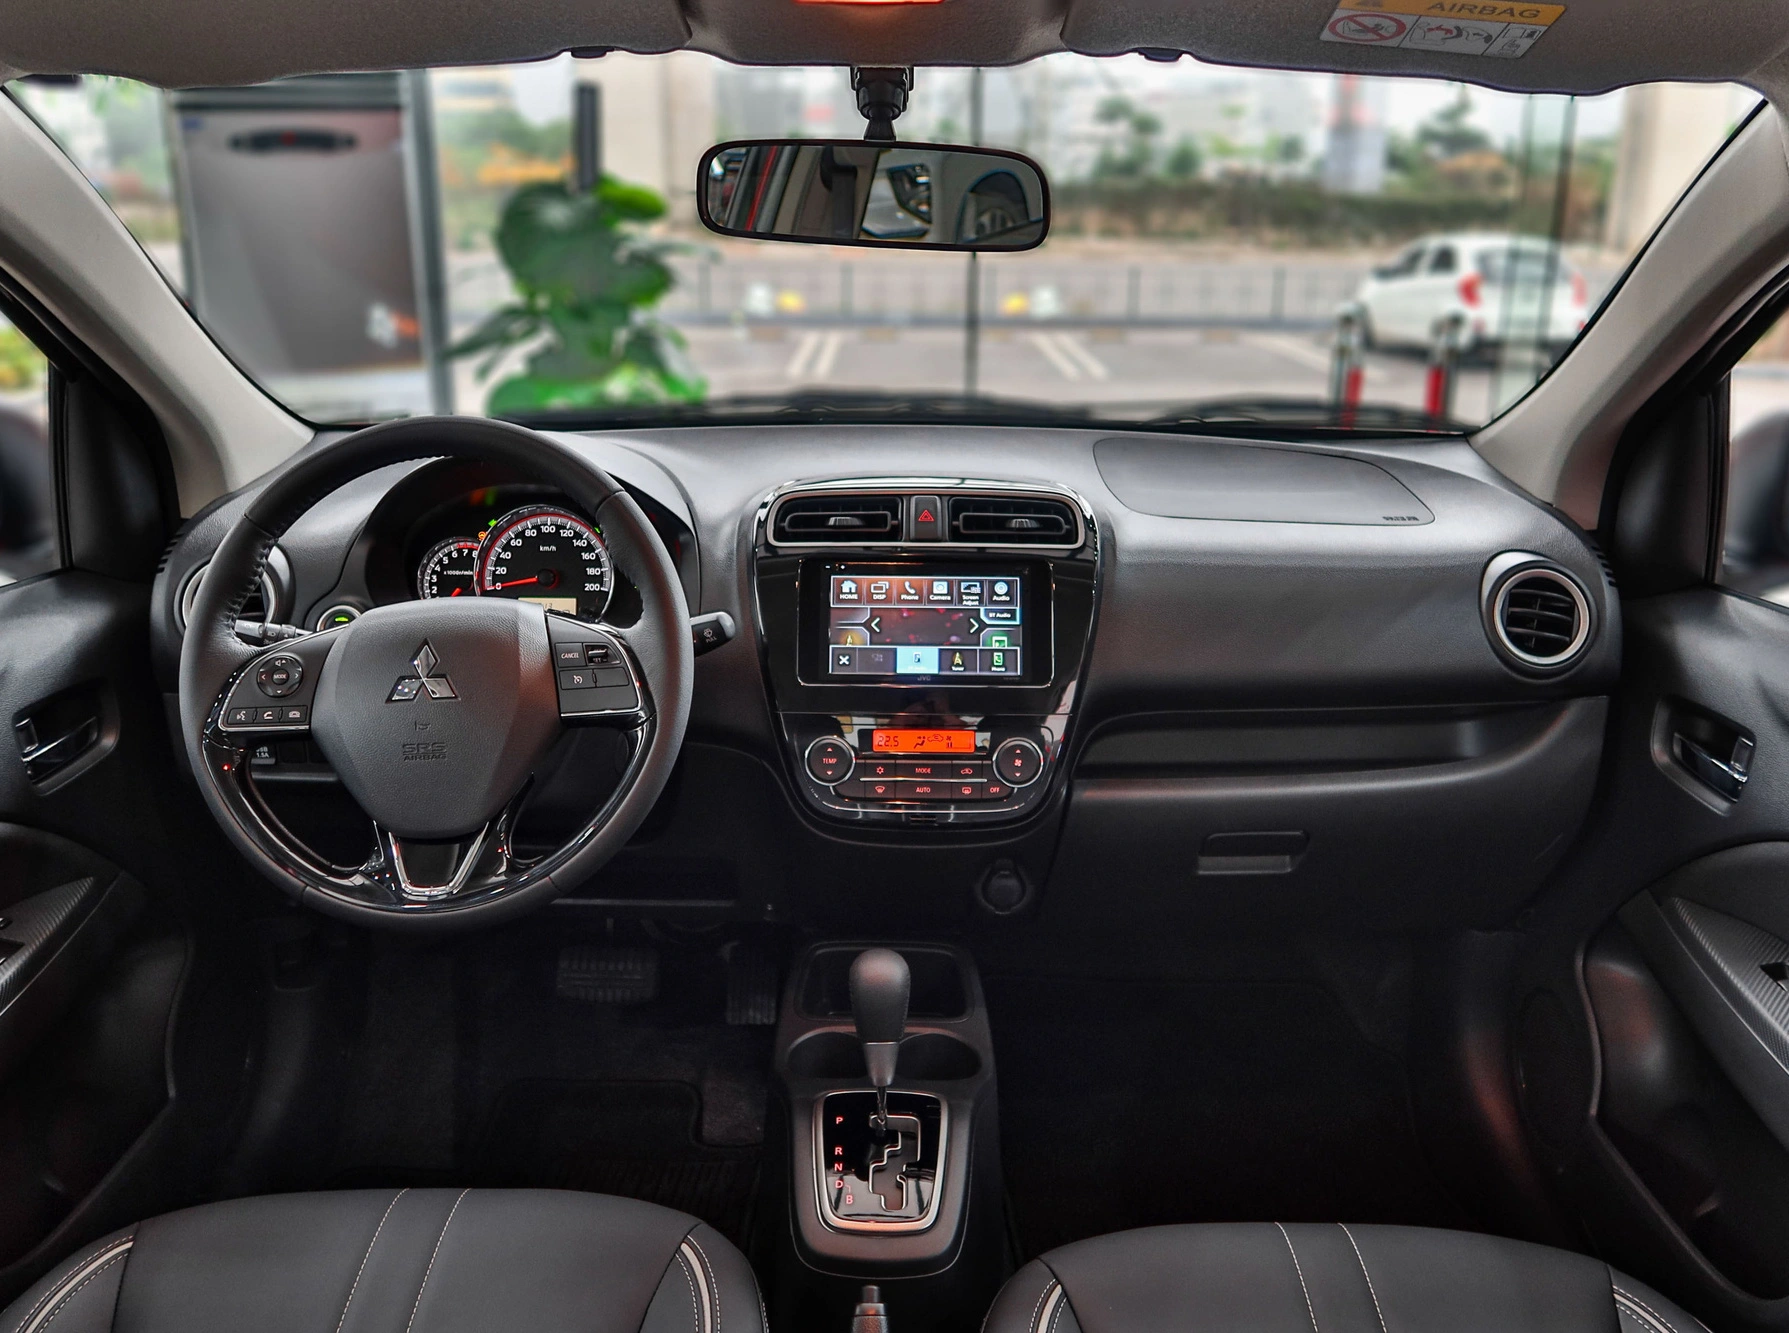 Duy trì sức bền, Mitsubishi Attrage đứng top 3 xe nhập bán chạy tại Việt Nam - Ảnh 2.